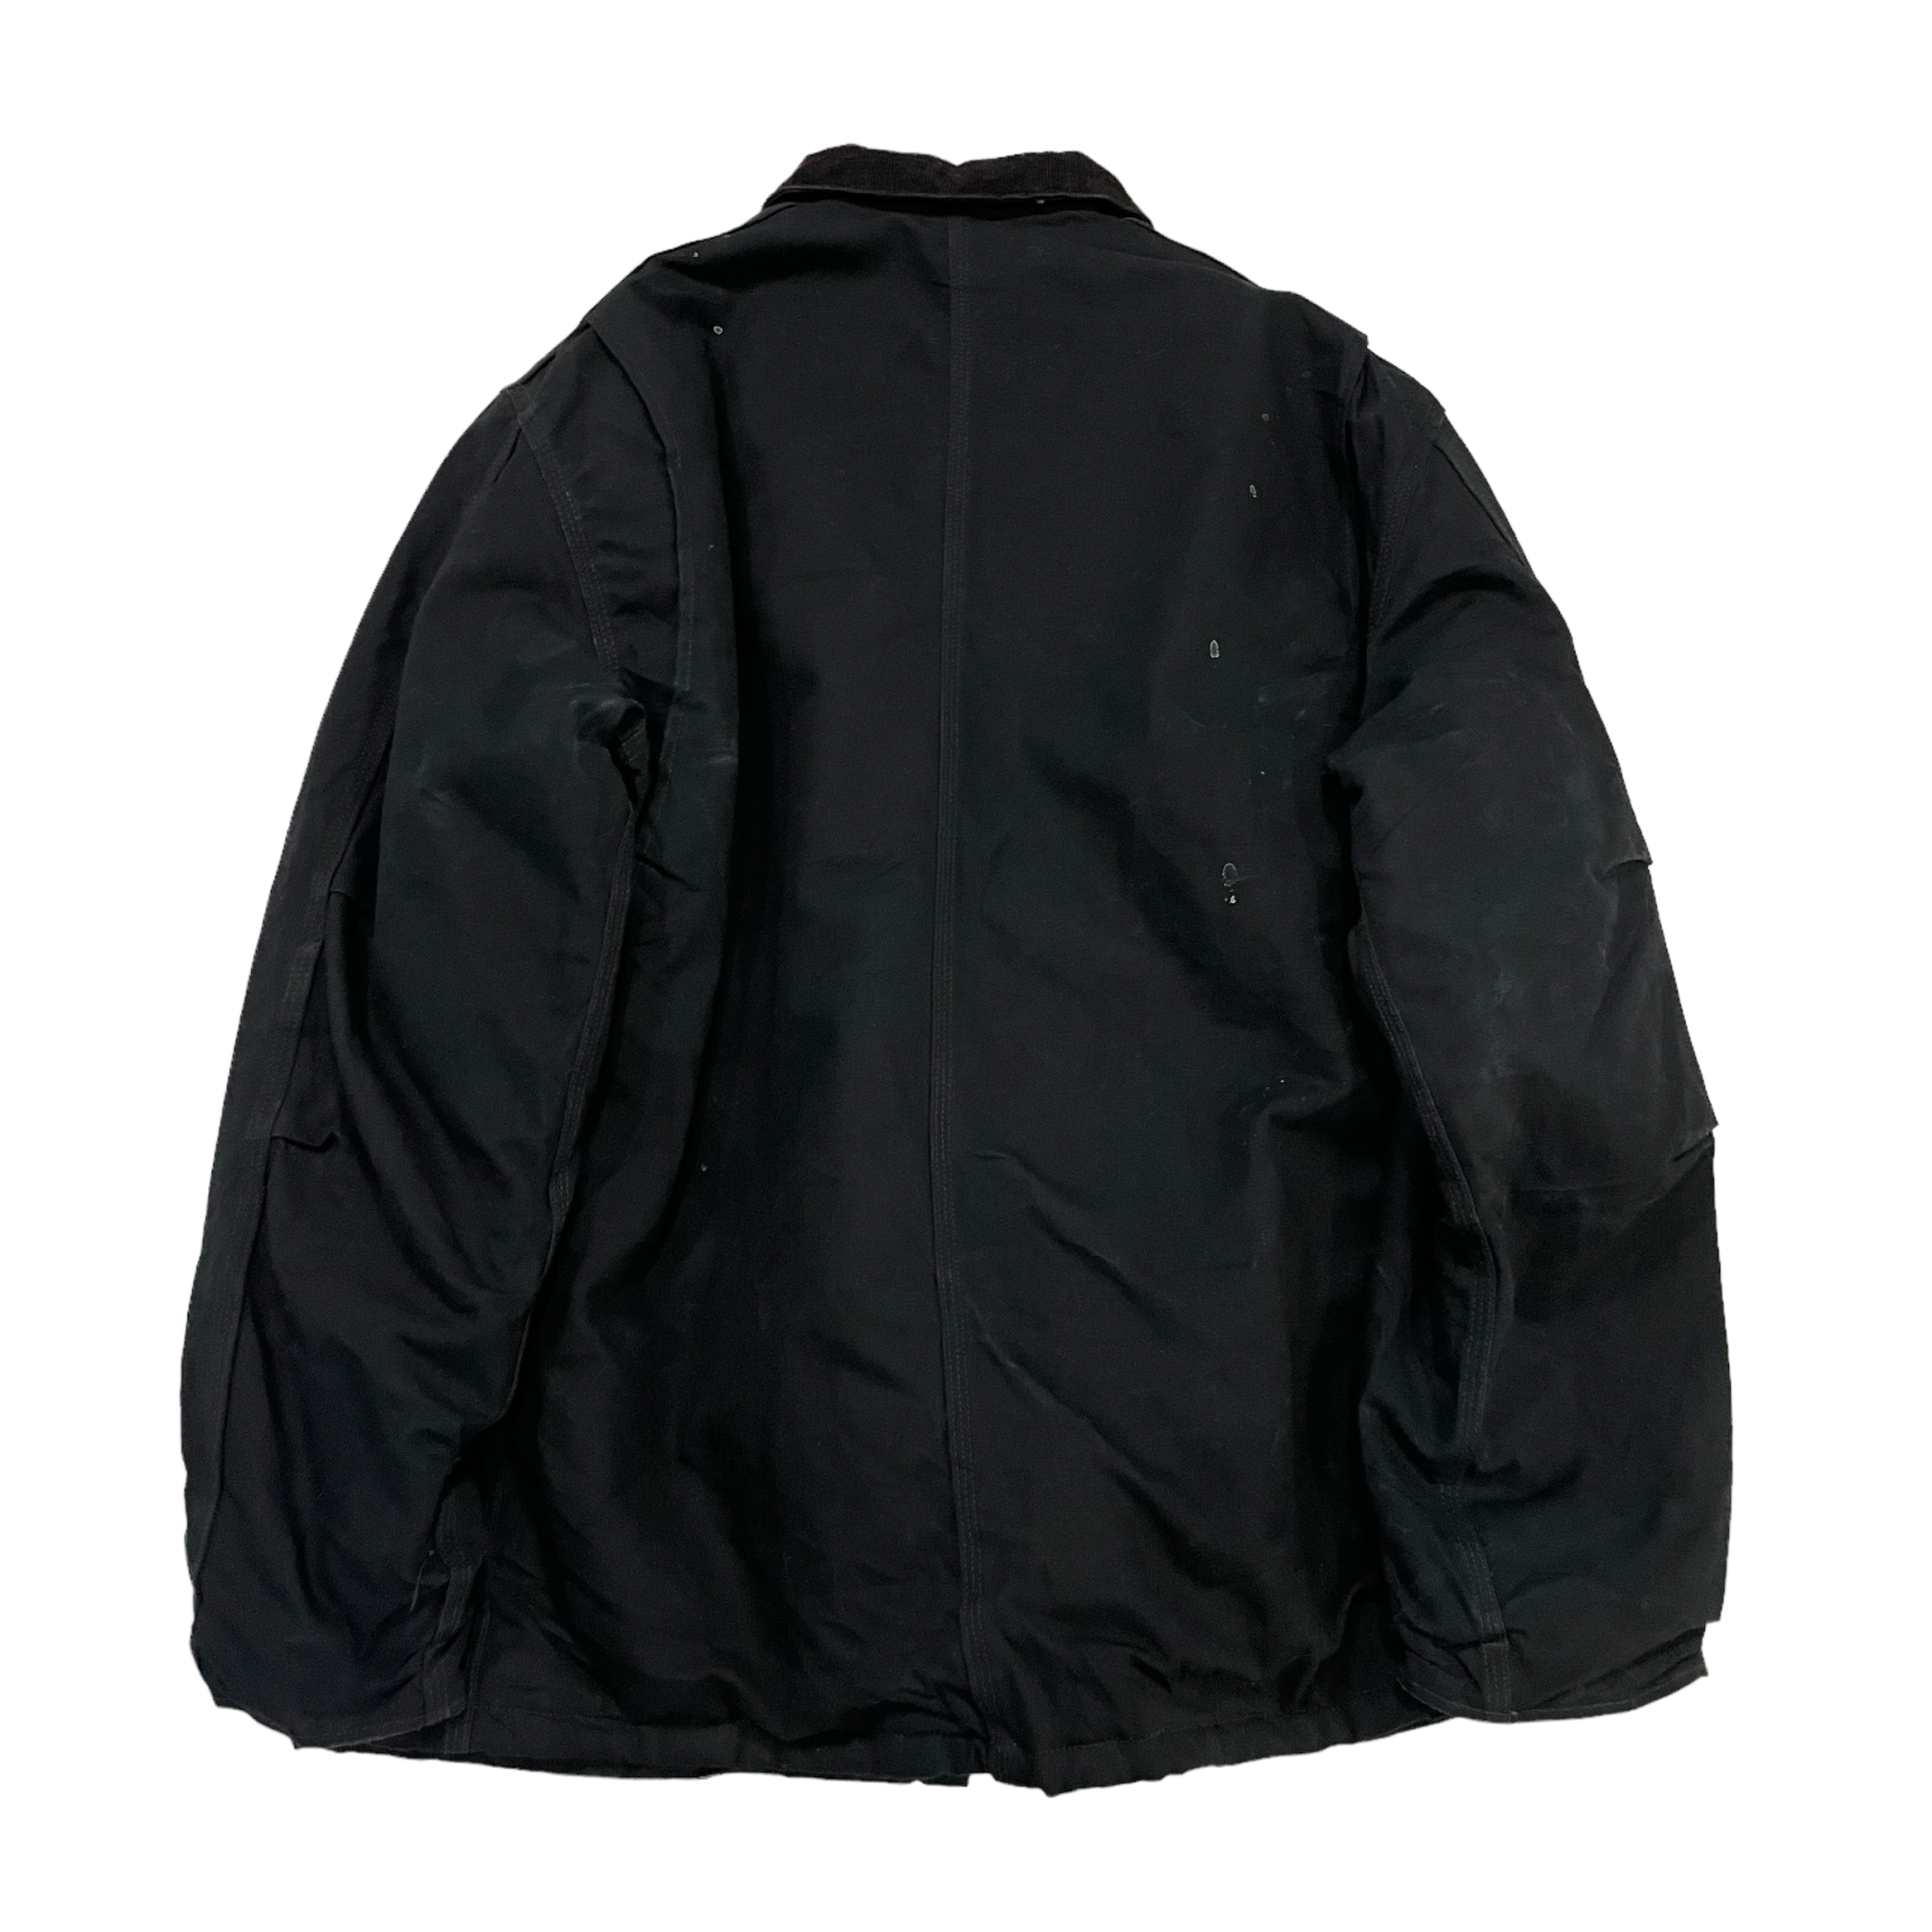 Carhartt / "Dearborn" duck jacket #A255